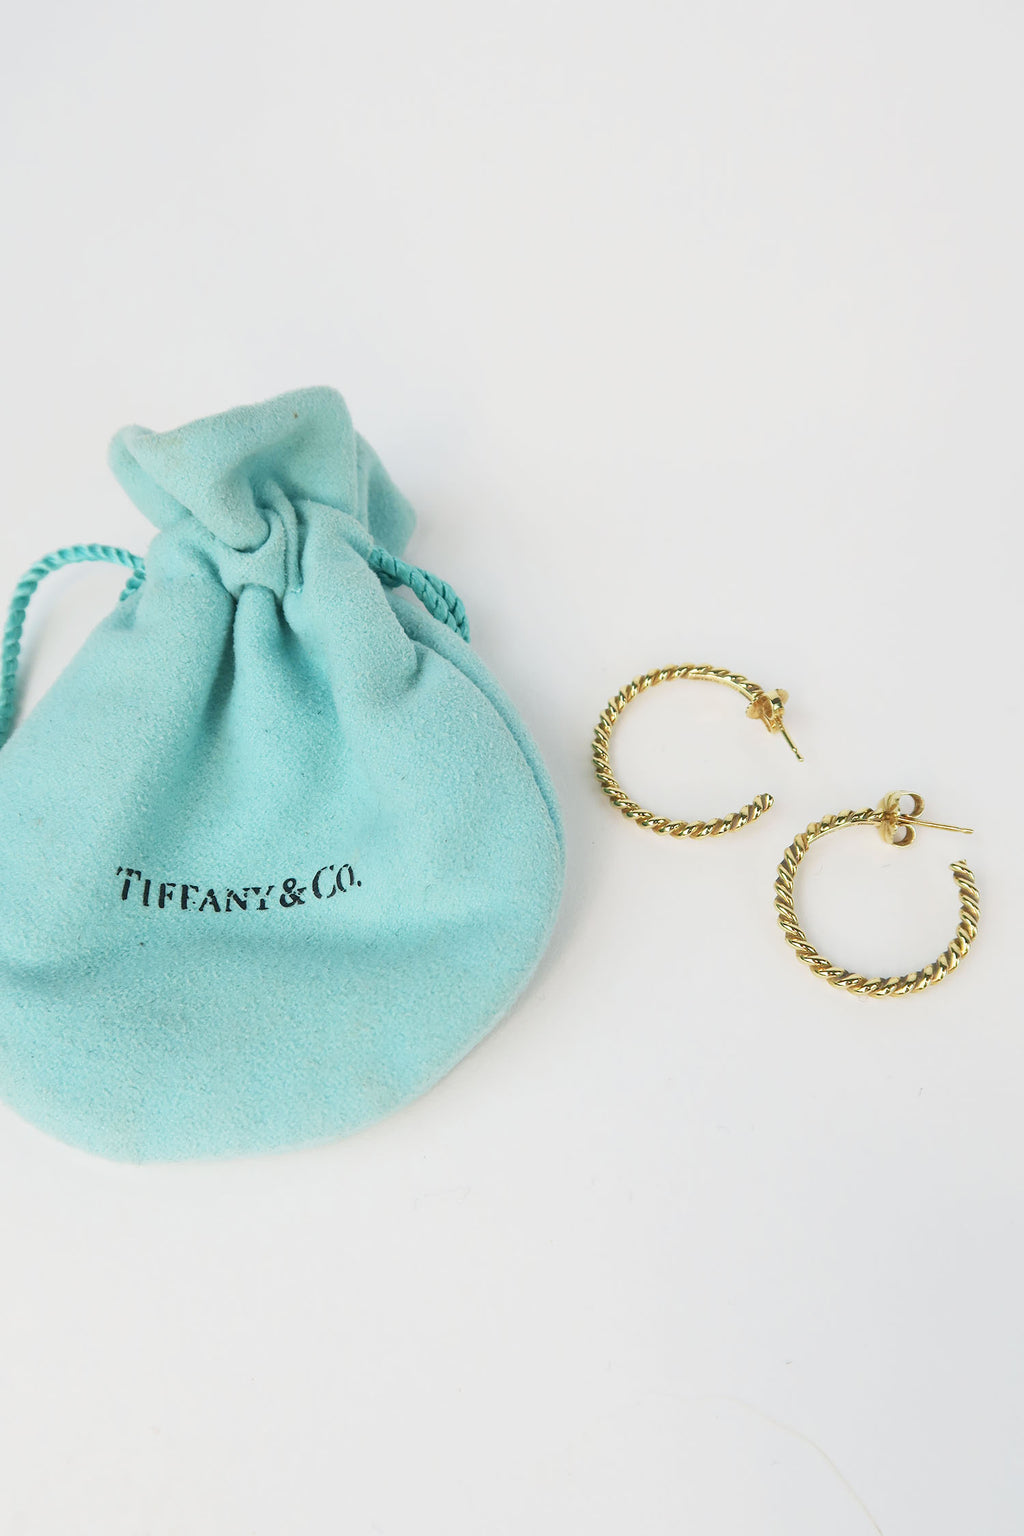 Tiffany & Co. 18K Twist Hoops